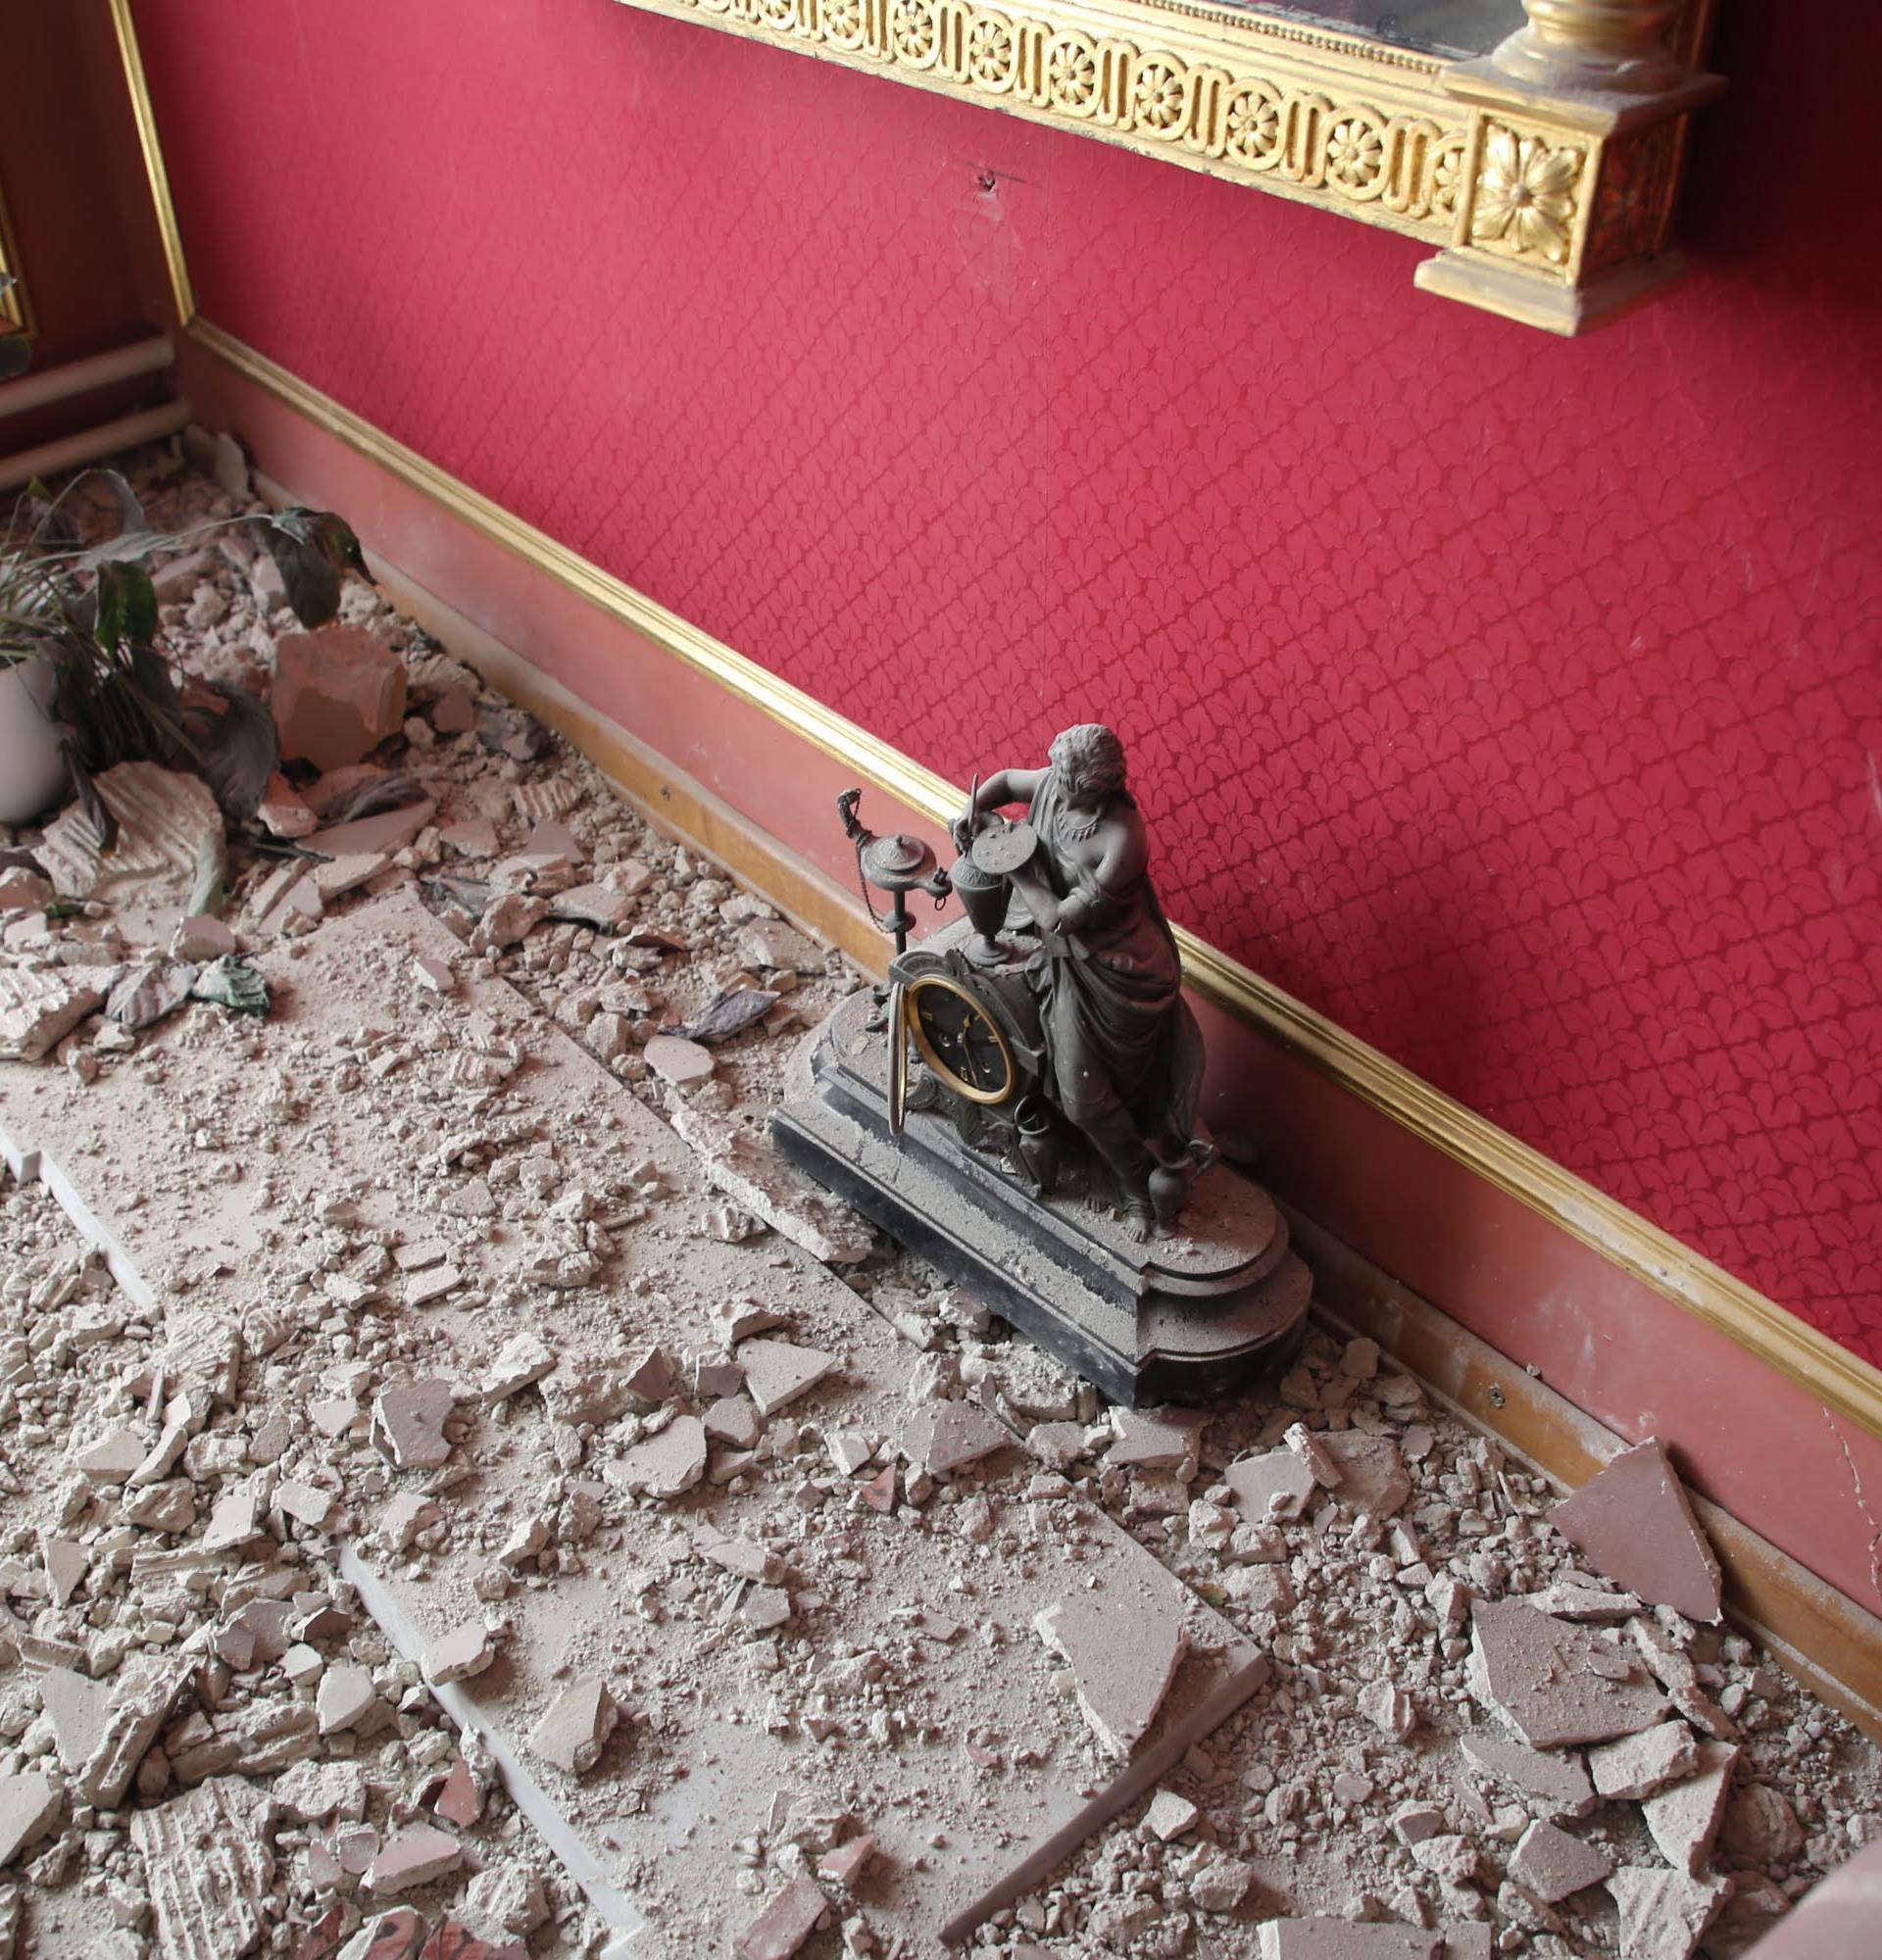 Biskupija objavila fotografije uništenja katedrale i dvora